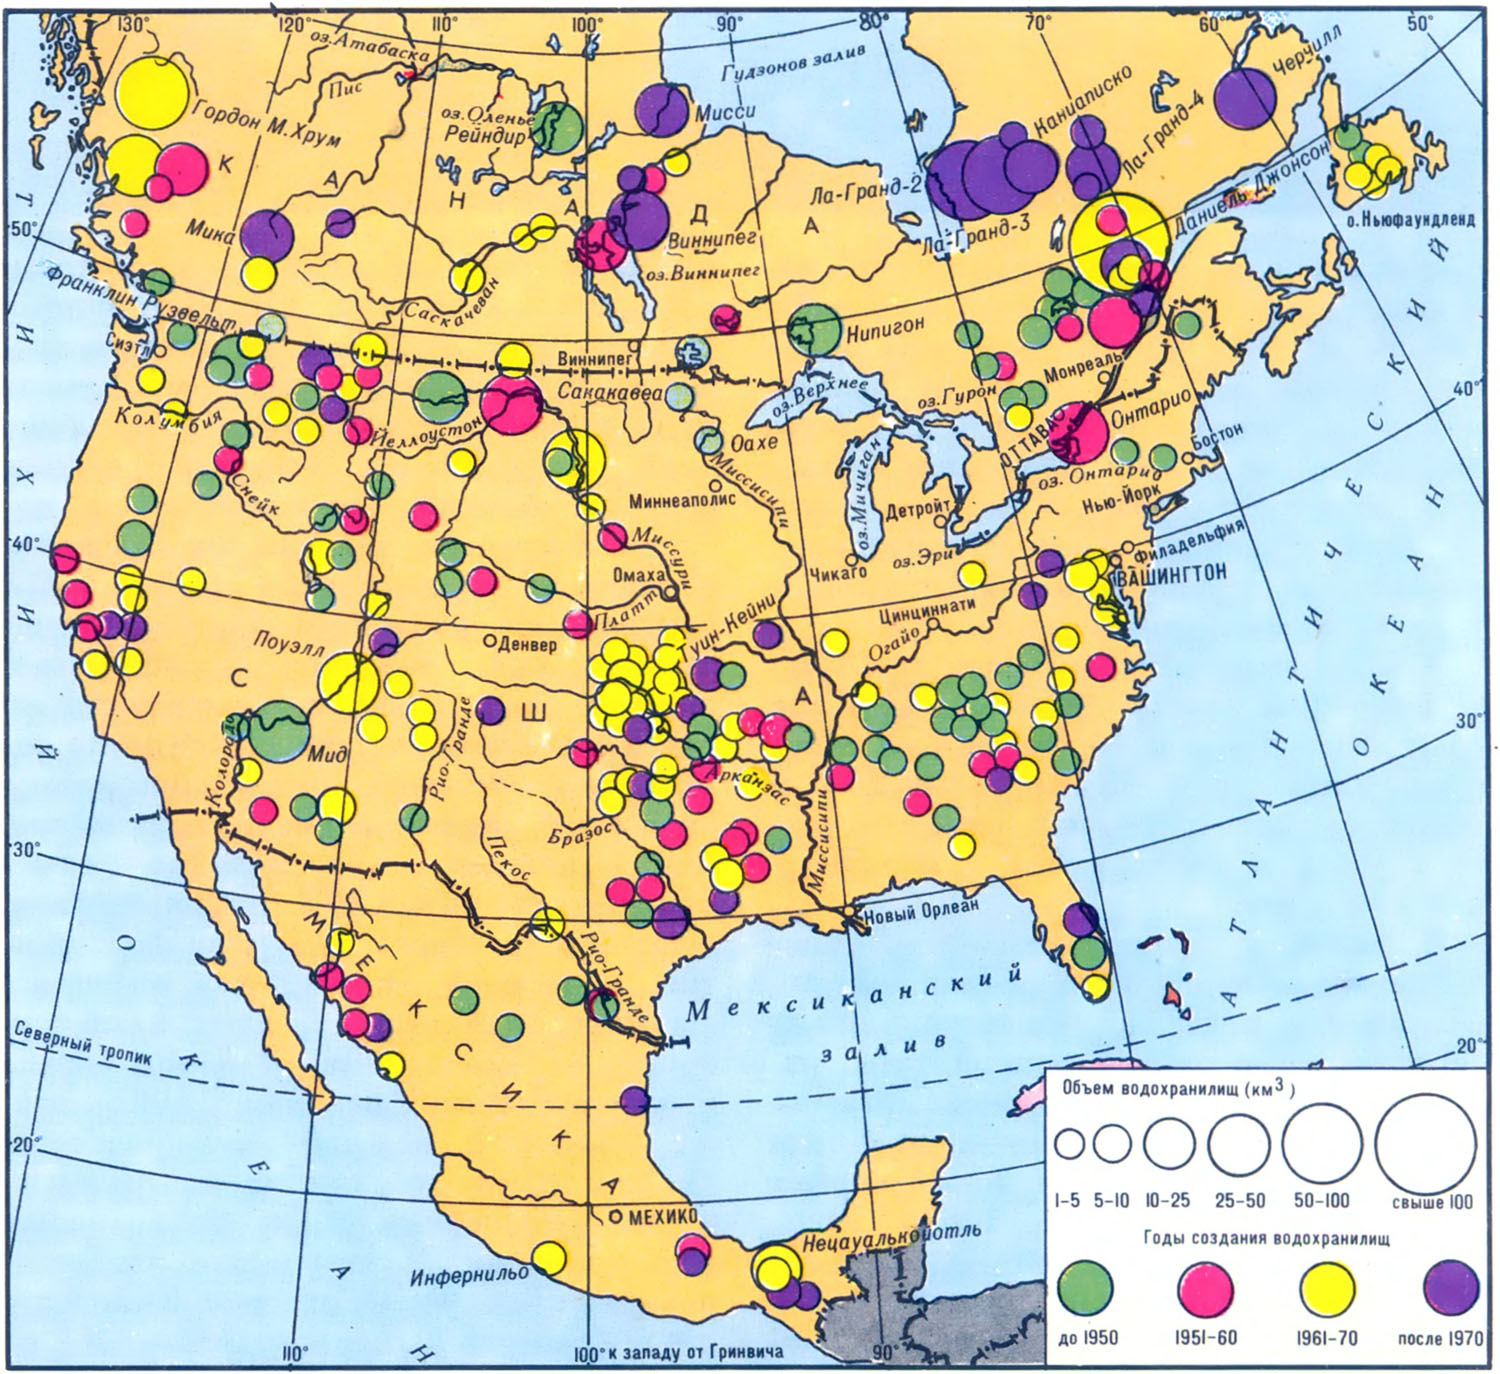 Полезные ископаемые северной америки на контурной карте. Карта промышленности Северной Америки. Основные полезные ископаемые США на карте. Карта полезных ископаемых США И Канады. Полезные ископаемые Северной Америки на карте.